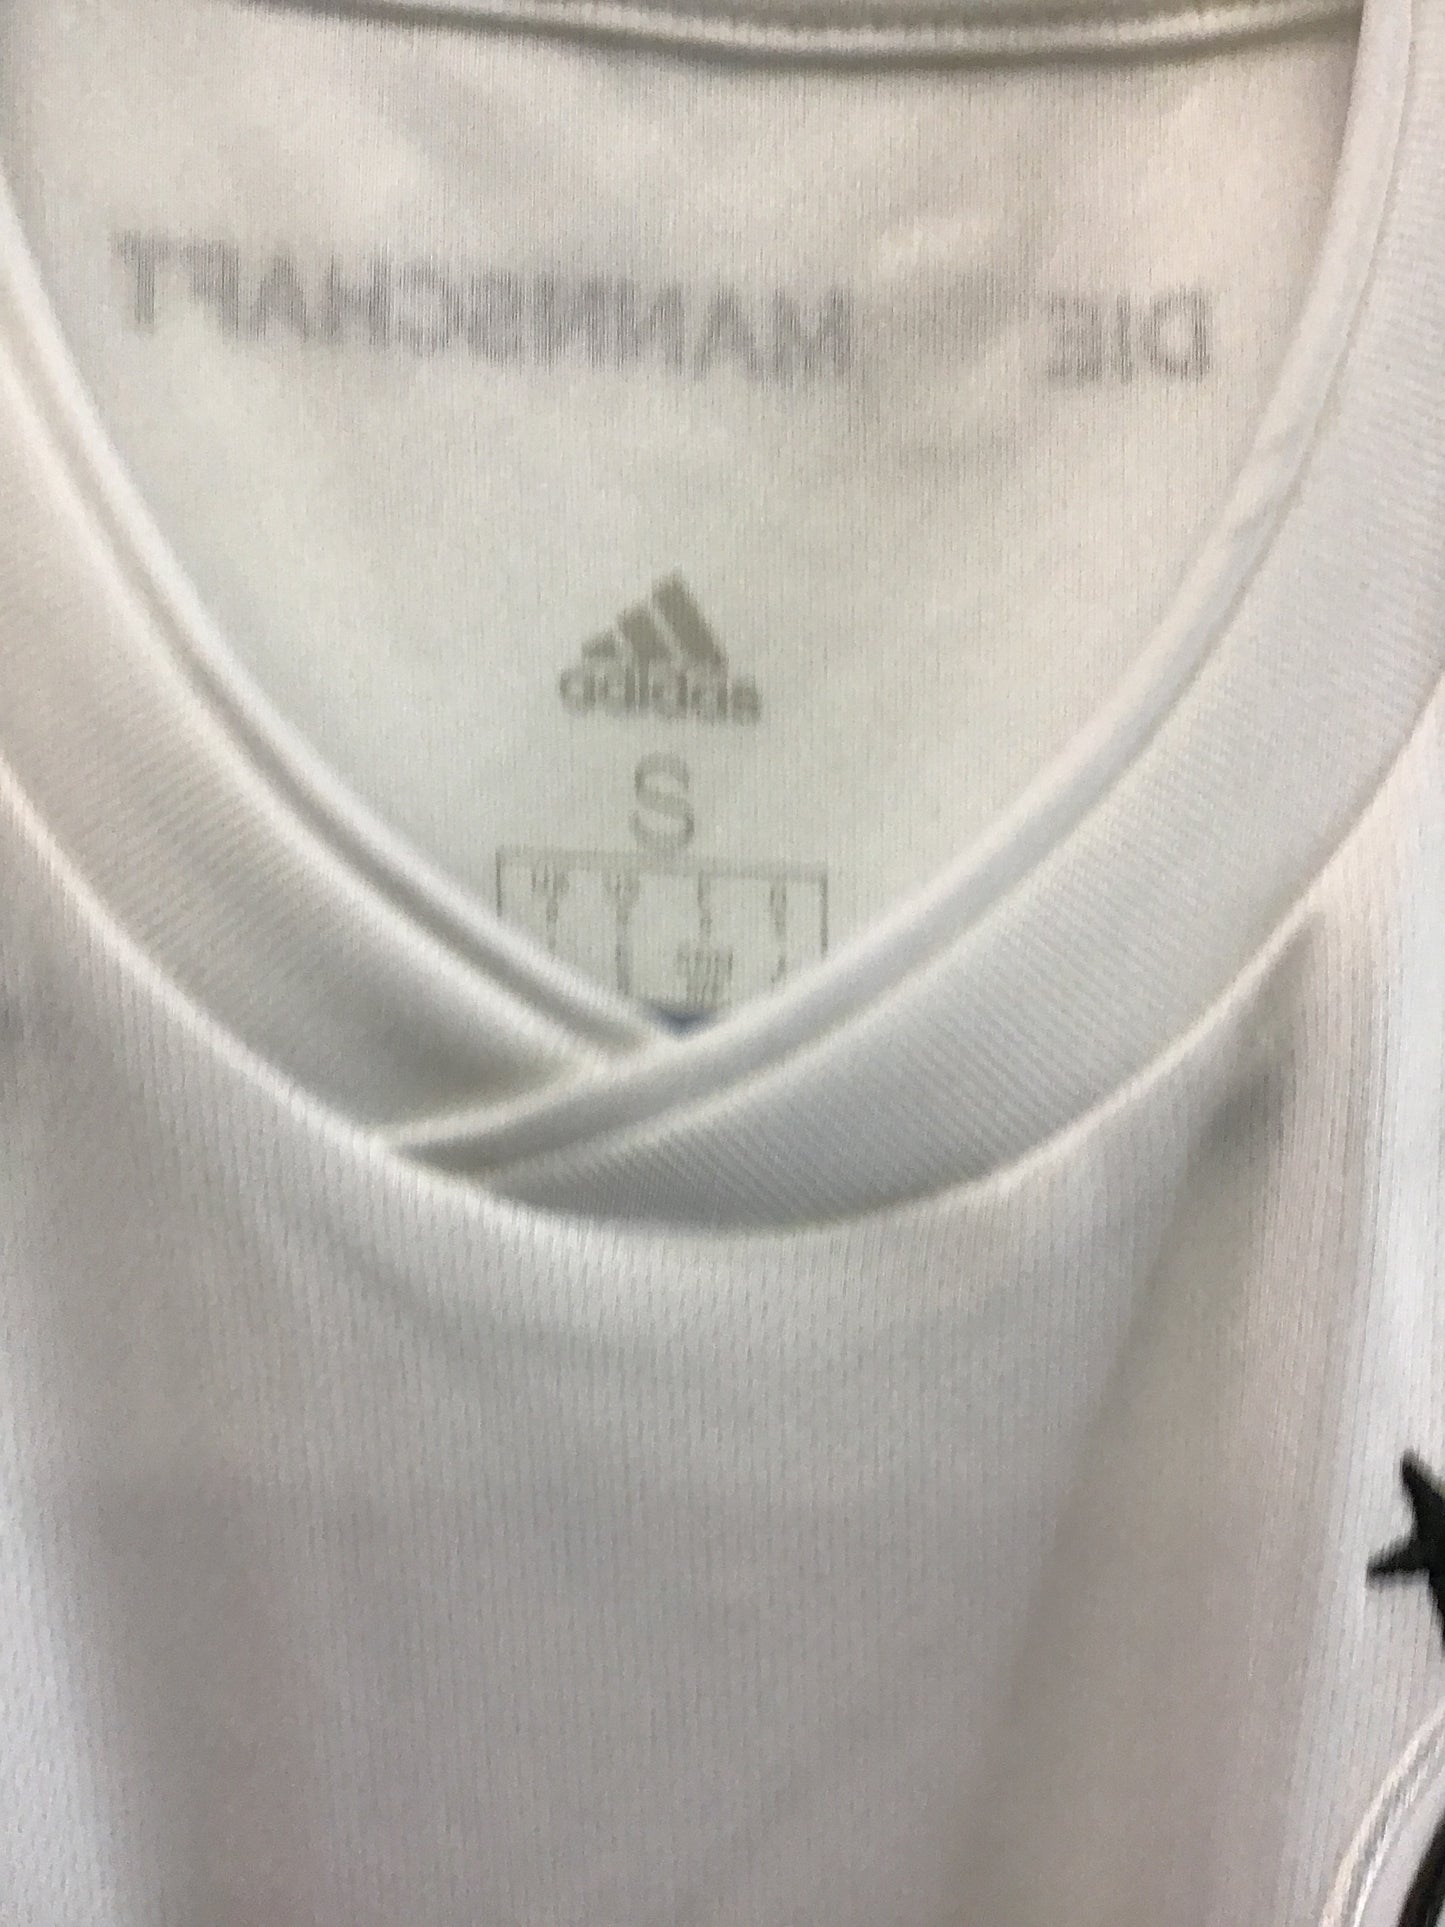 Deutscher FIFA World Champions 2014 Adidas Jersey, Size S